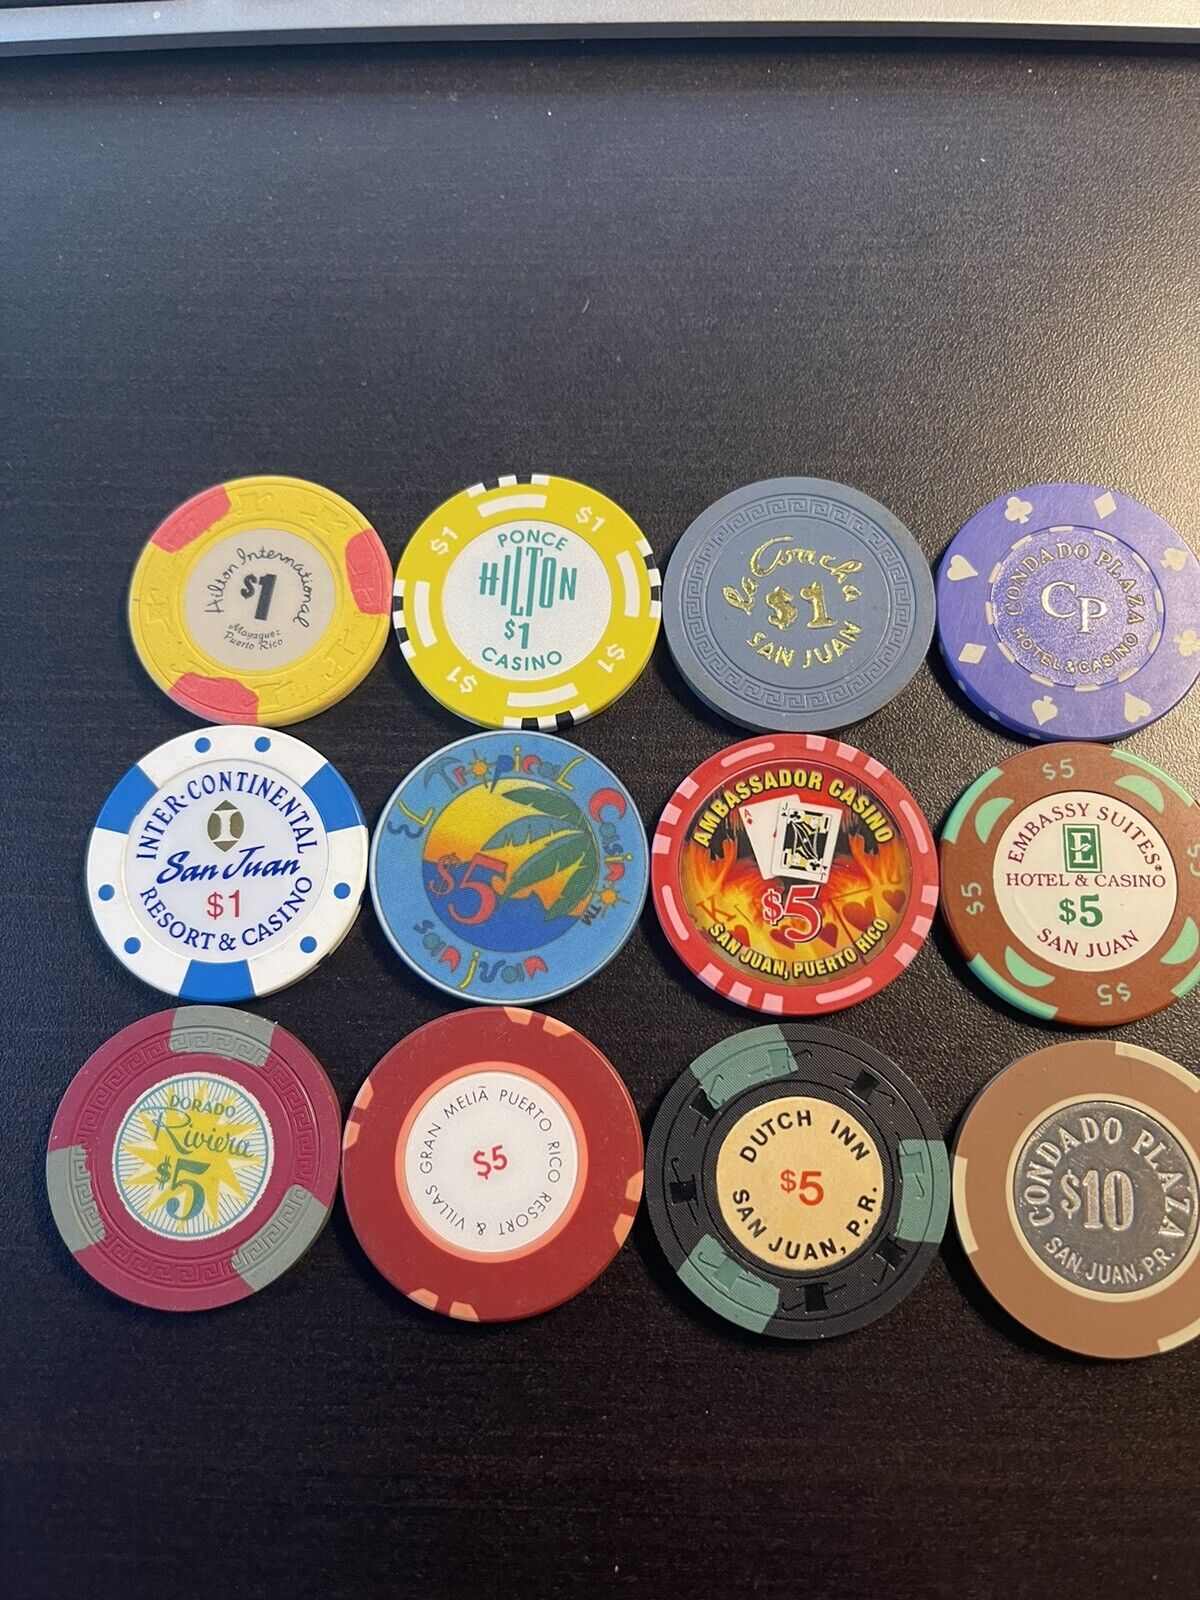 (12) Puerto Rico Casino Chips Vintage Chips $1 $5 $10 Dorado Condado La Concha